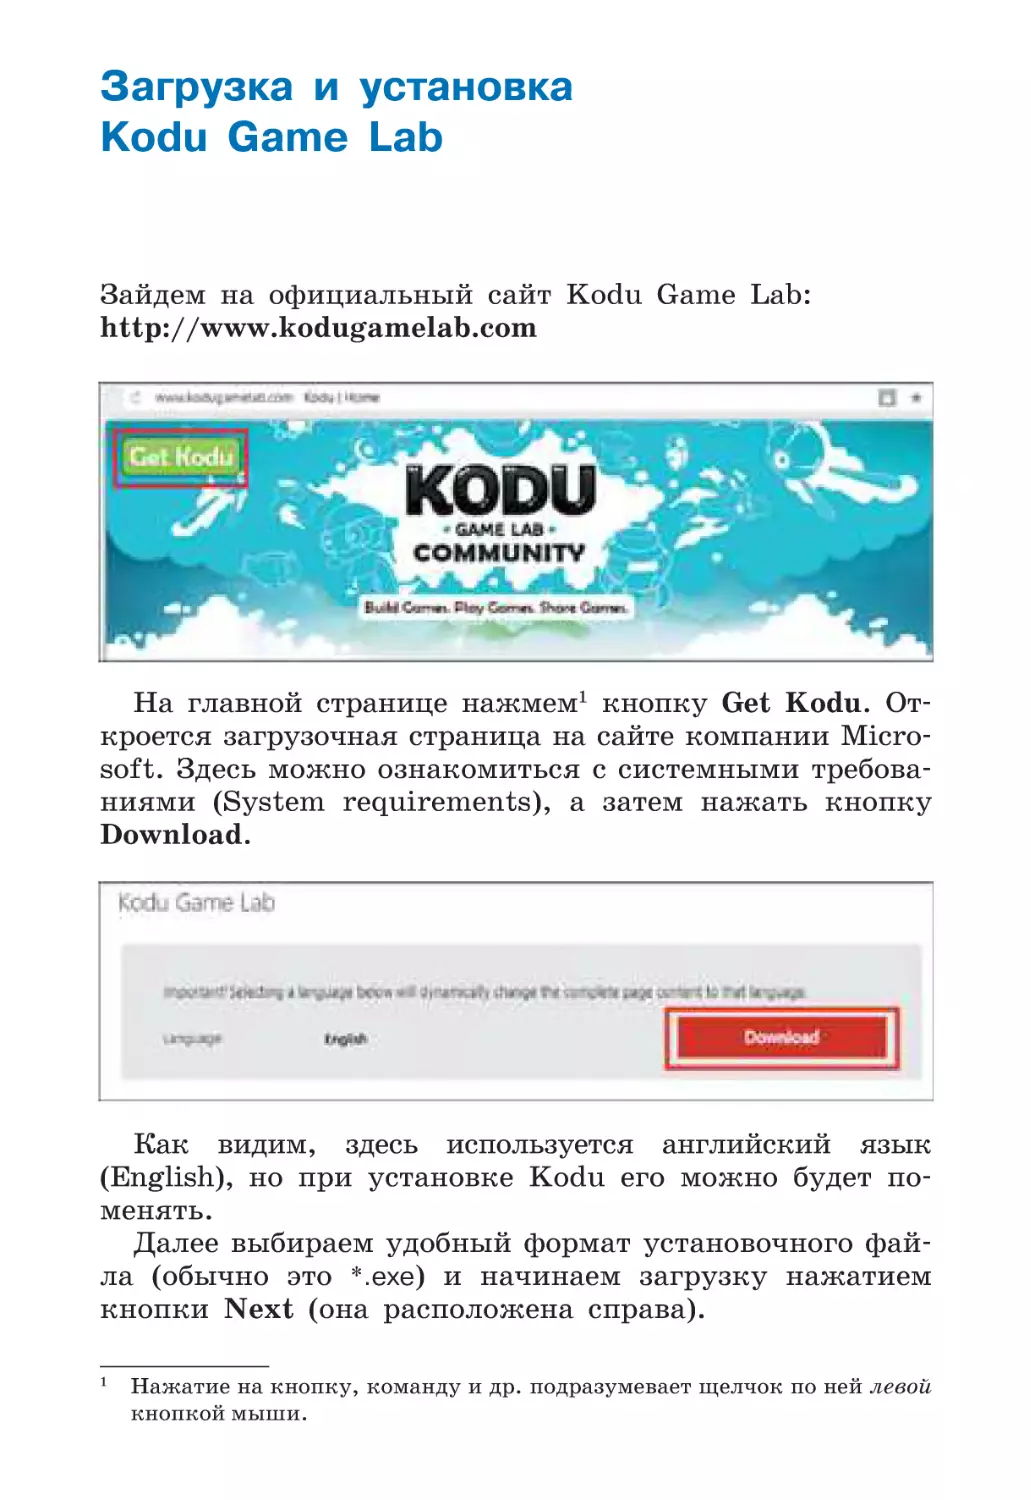 Загрузка и установка Kodu Game Lab